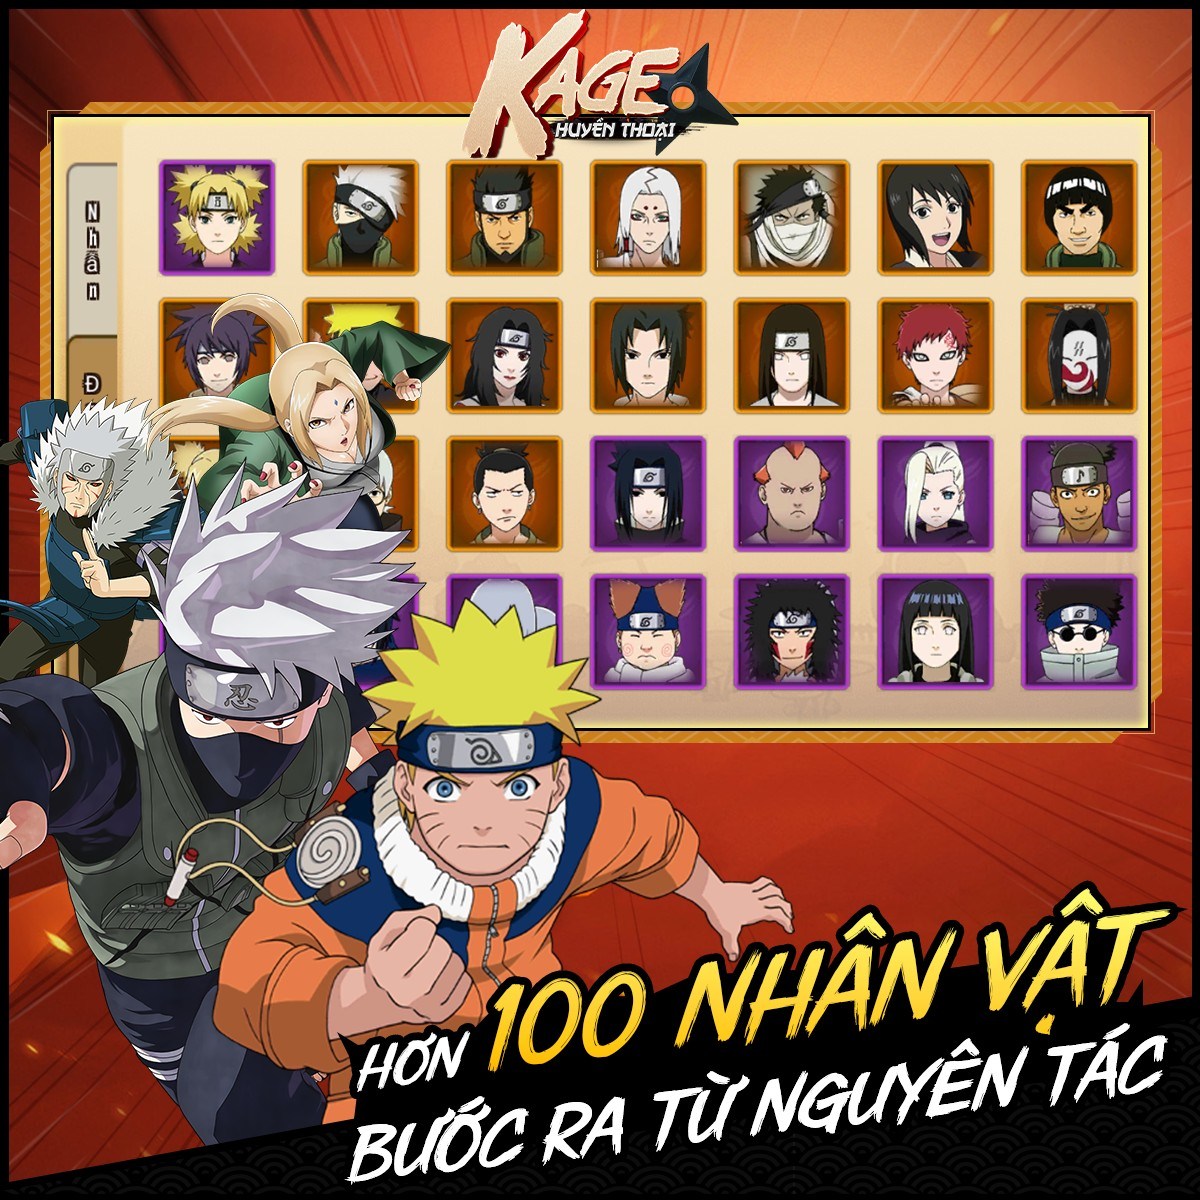 Kage Huyền Thoại: Game đấu tướng rảnh tay đề tài Naruto đến từ REGZ Games